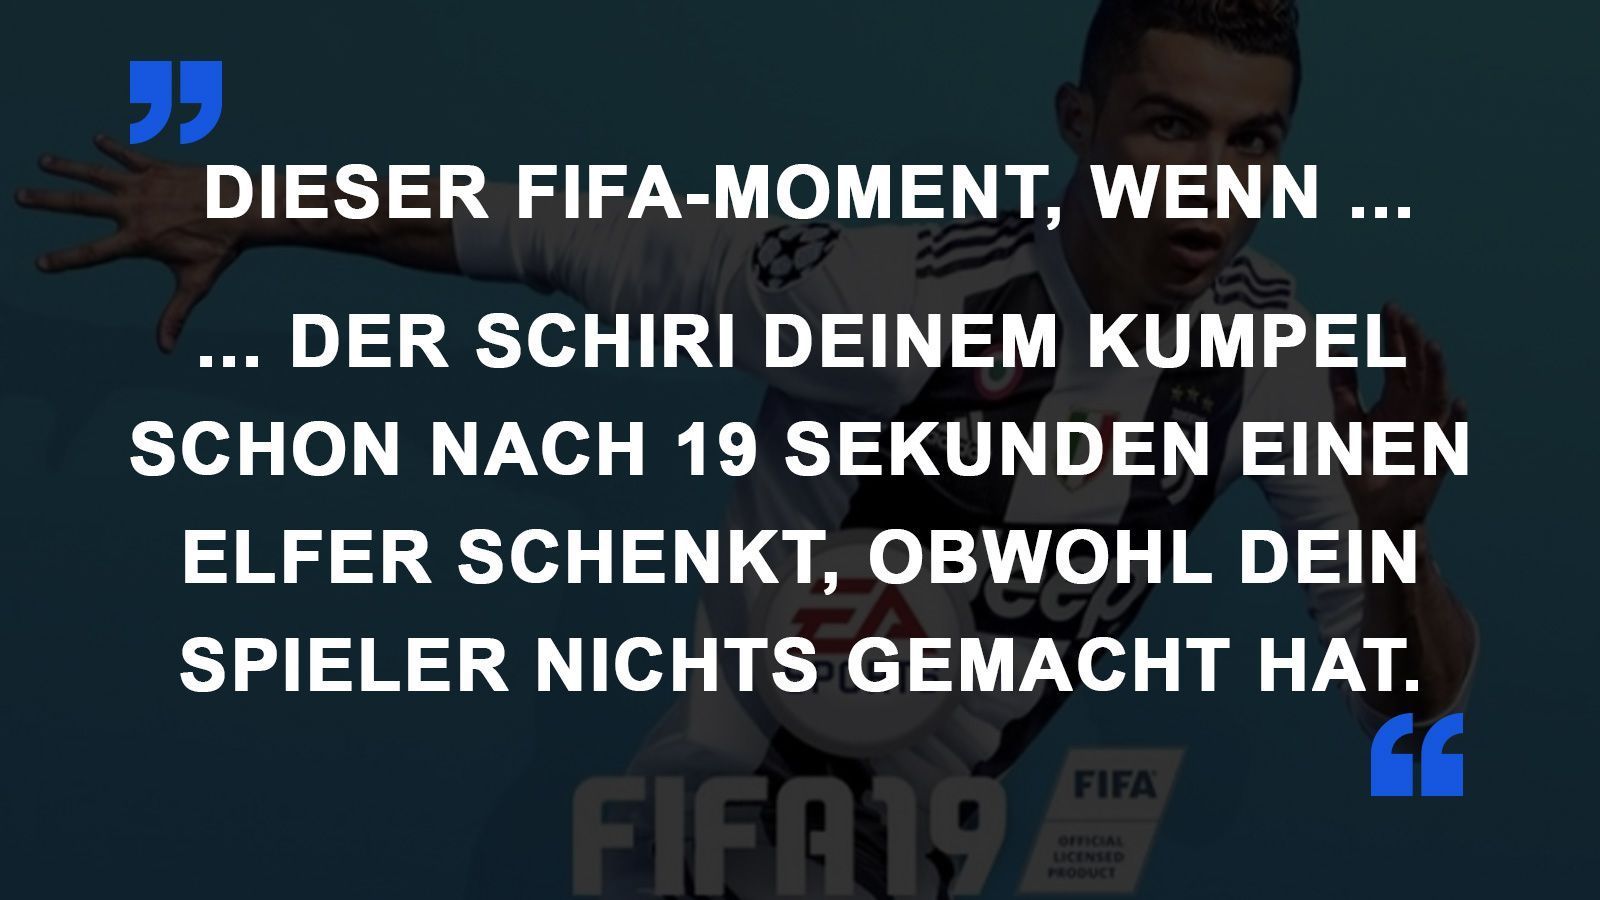 
                <strong>FIFA Momente Elfer</strong><br>
                
              